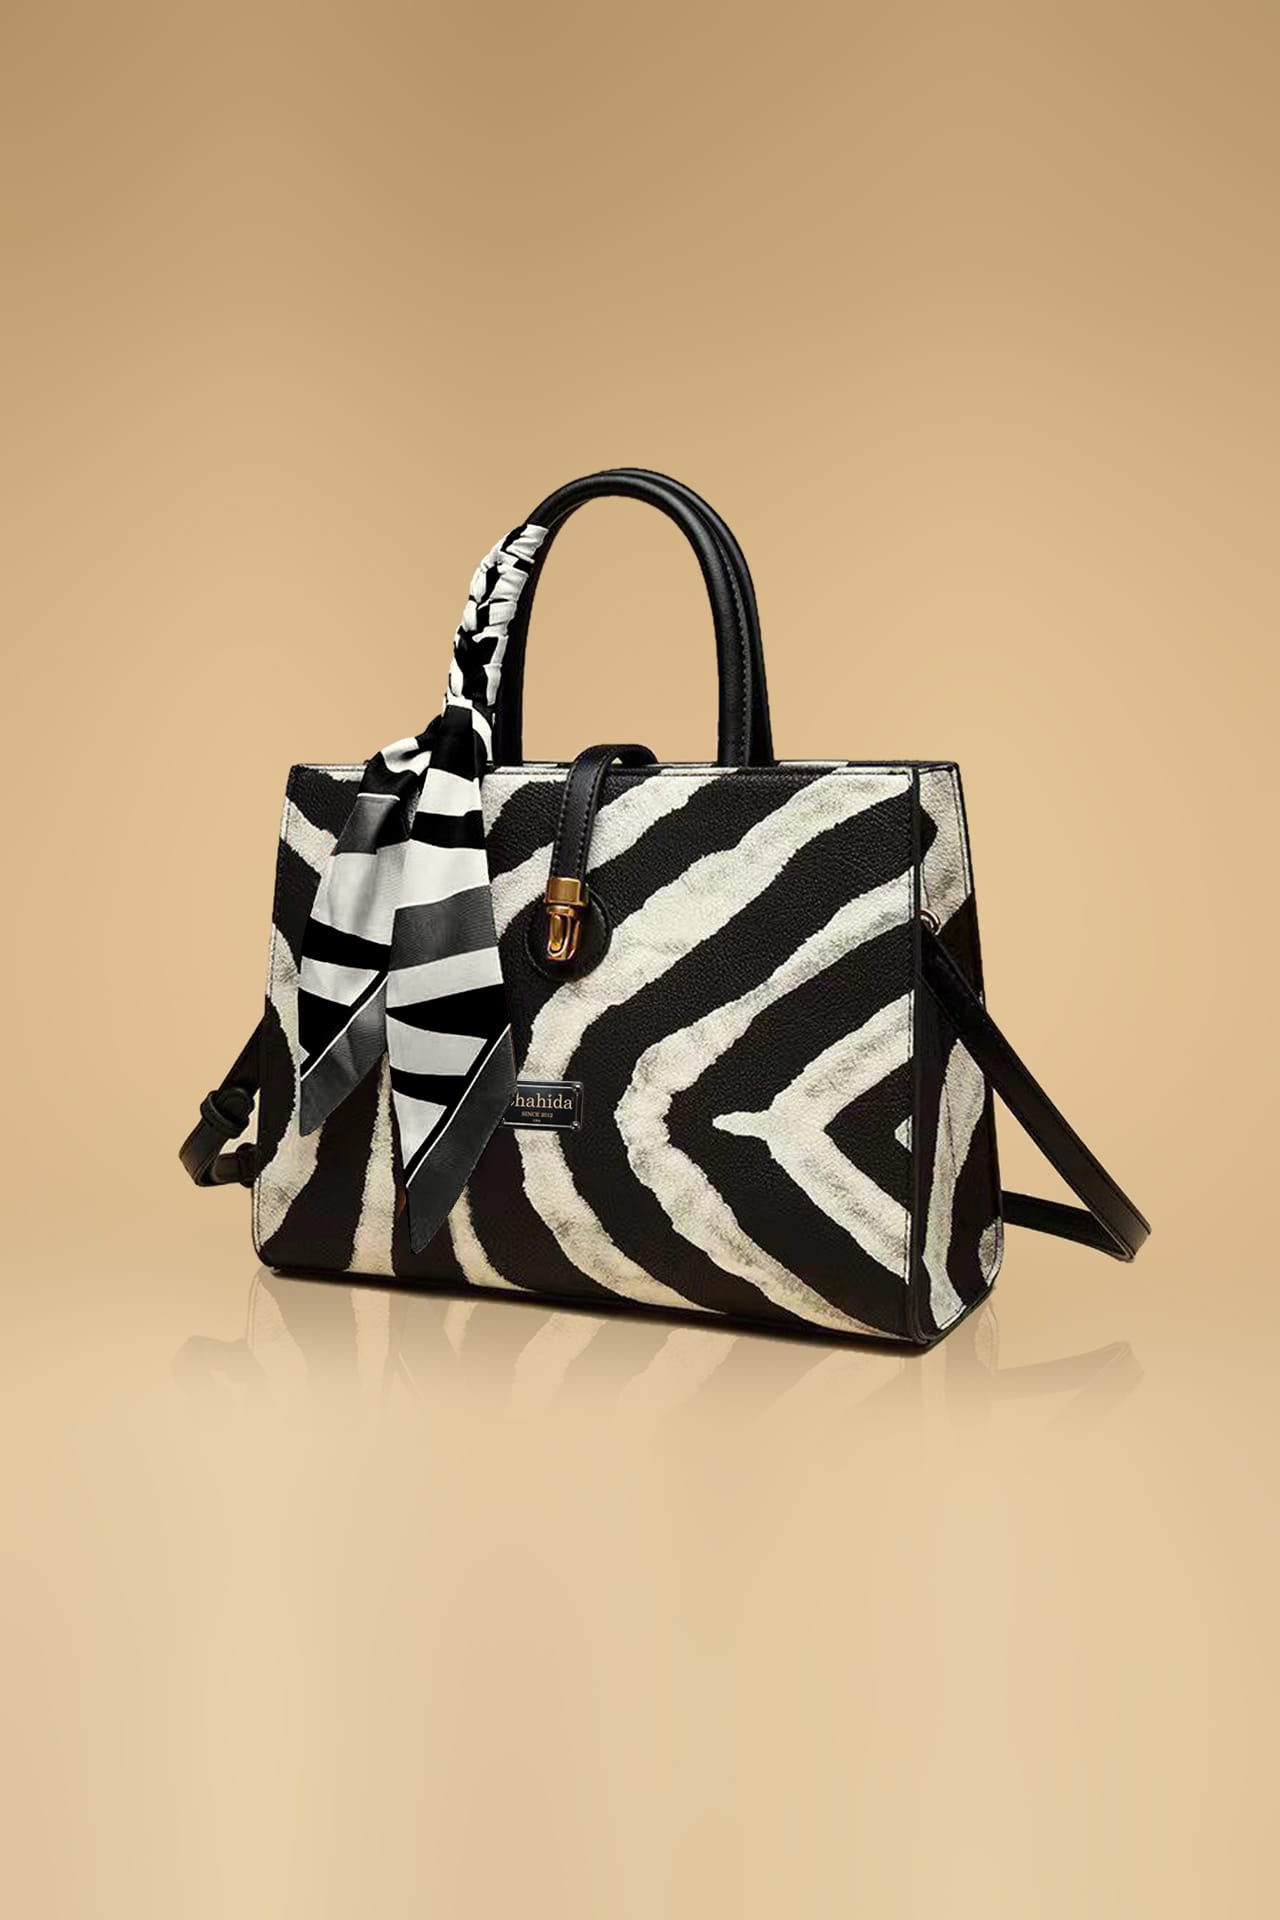 Brand New ! Zebra print bags - Depop